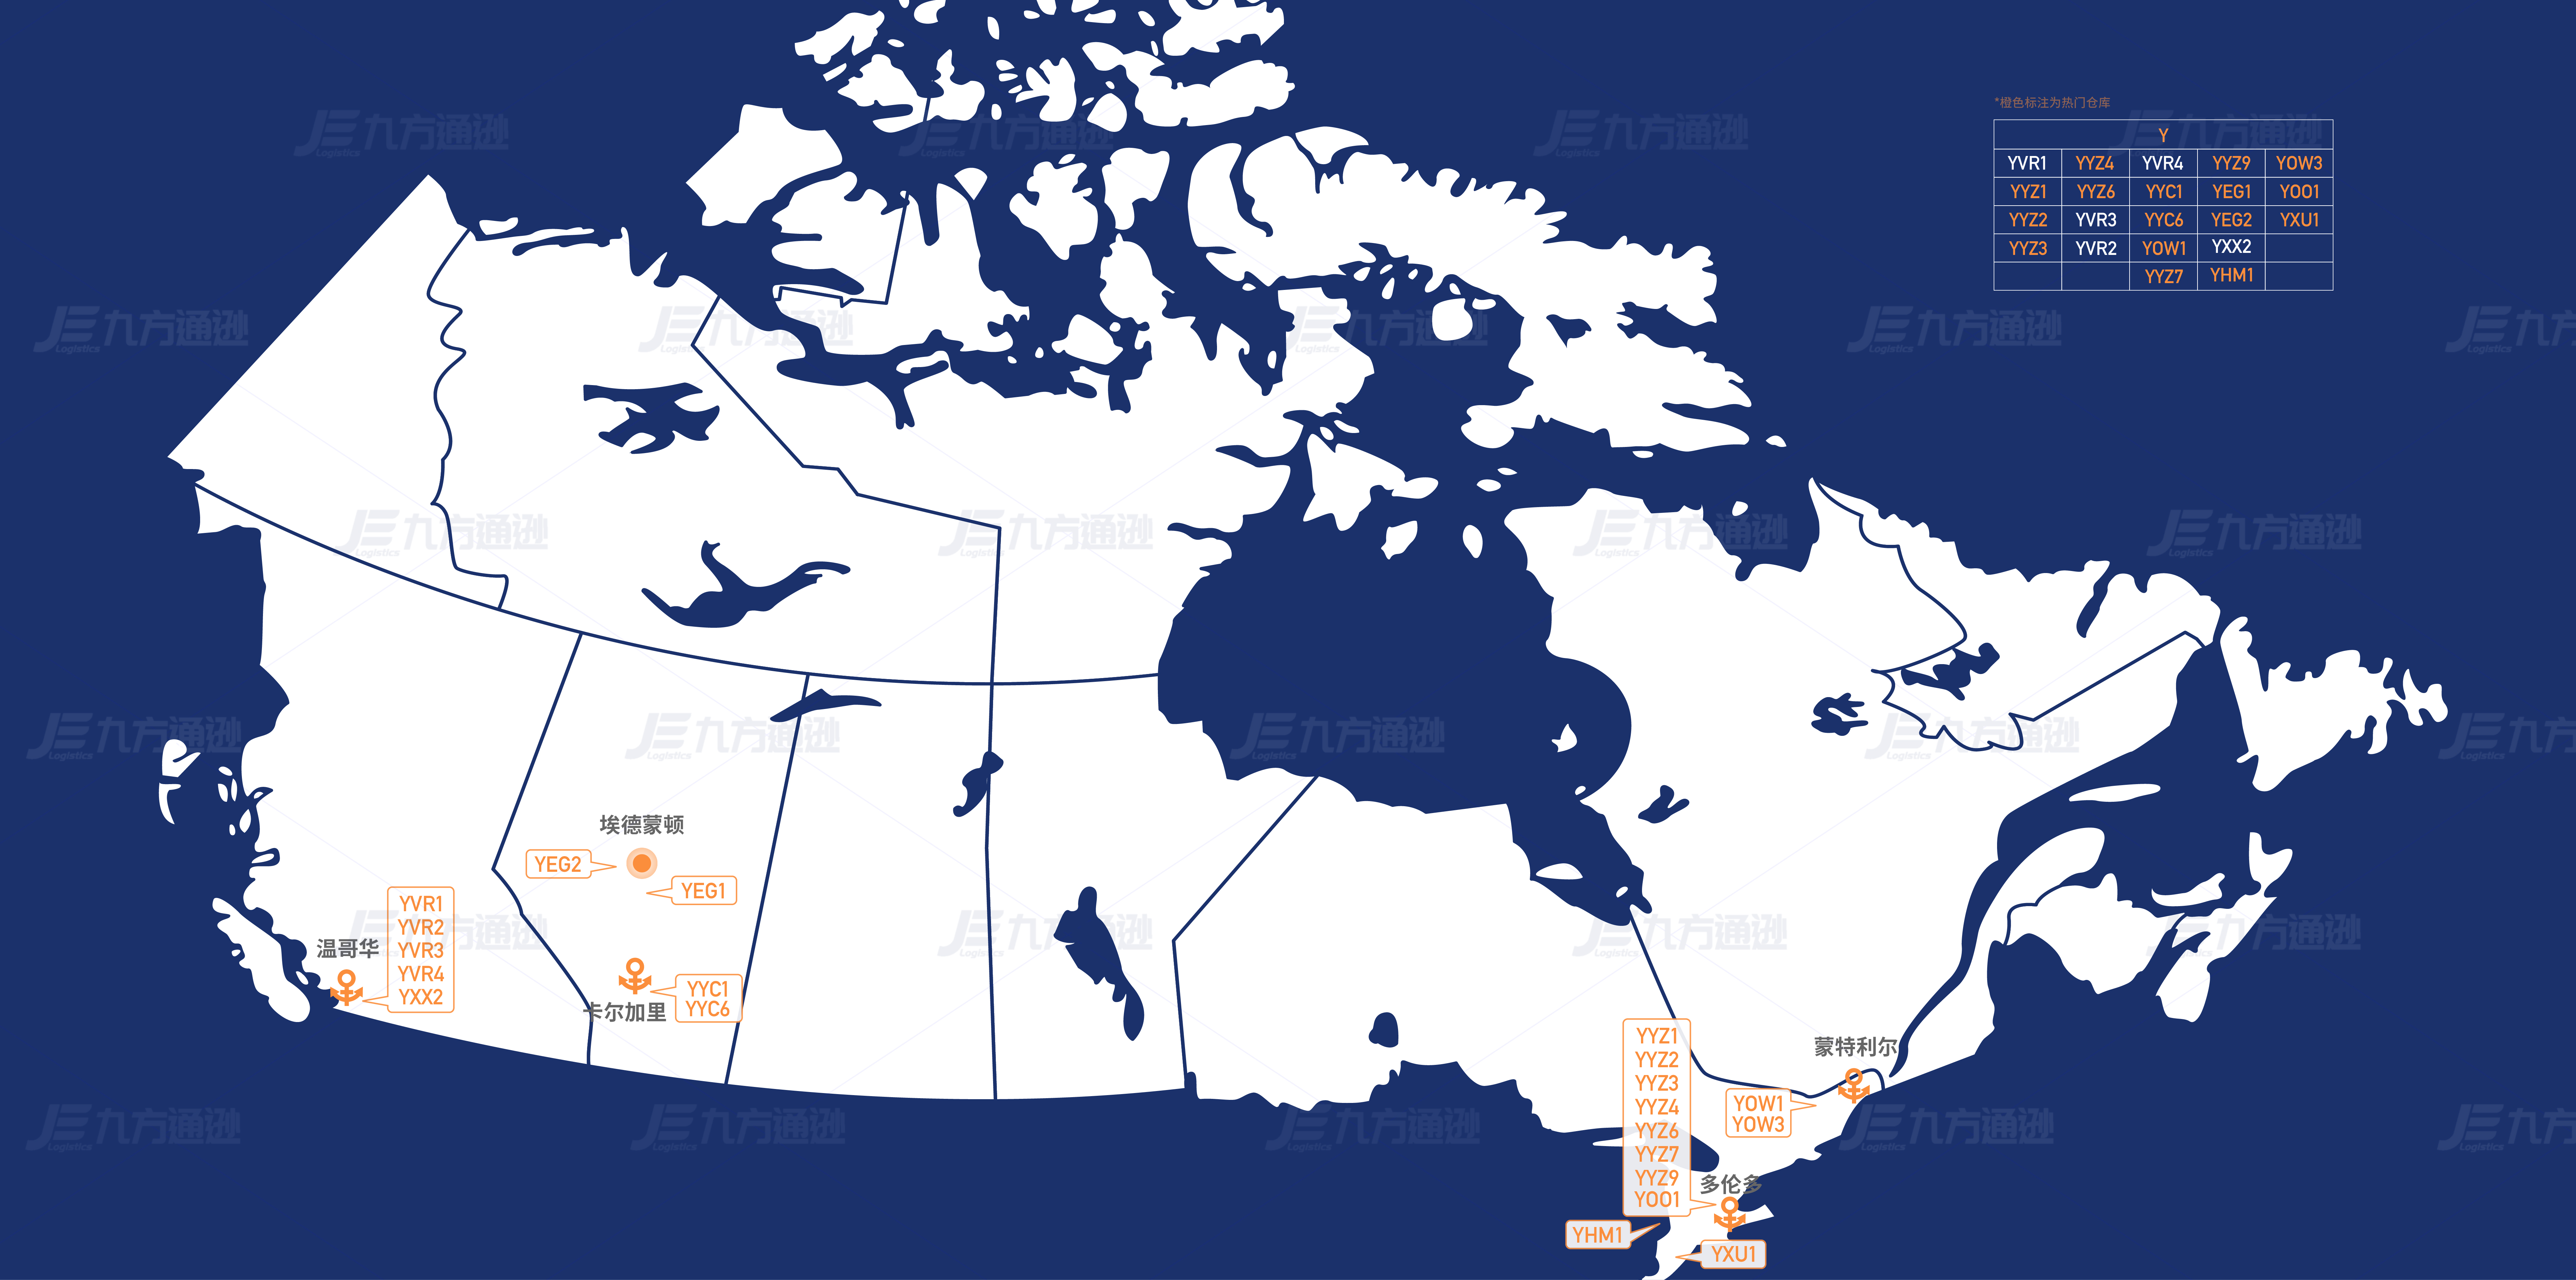 加拿大FBA仓库分布图